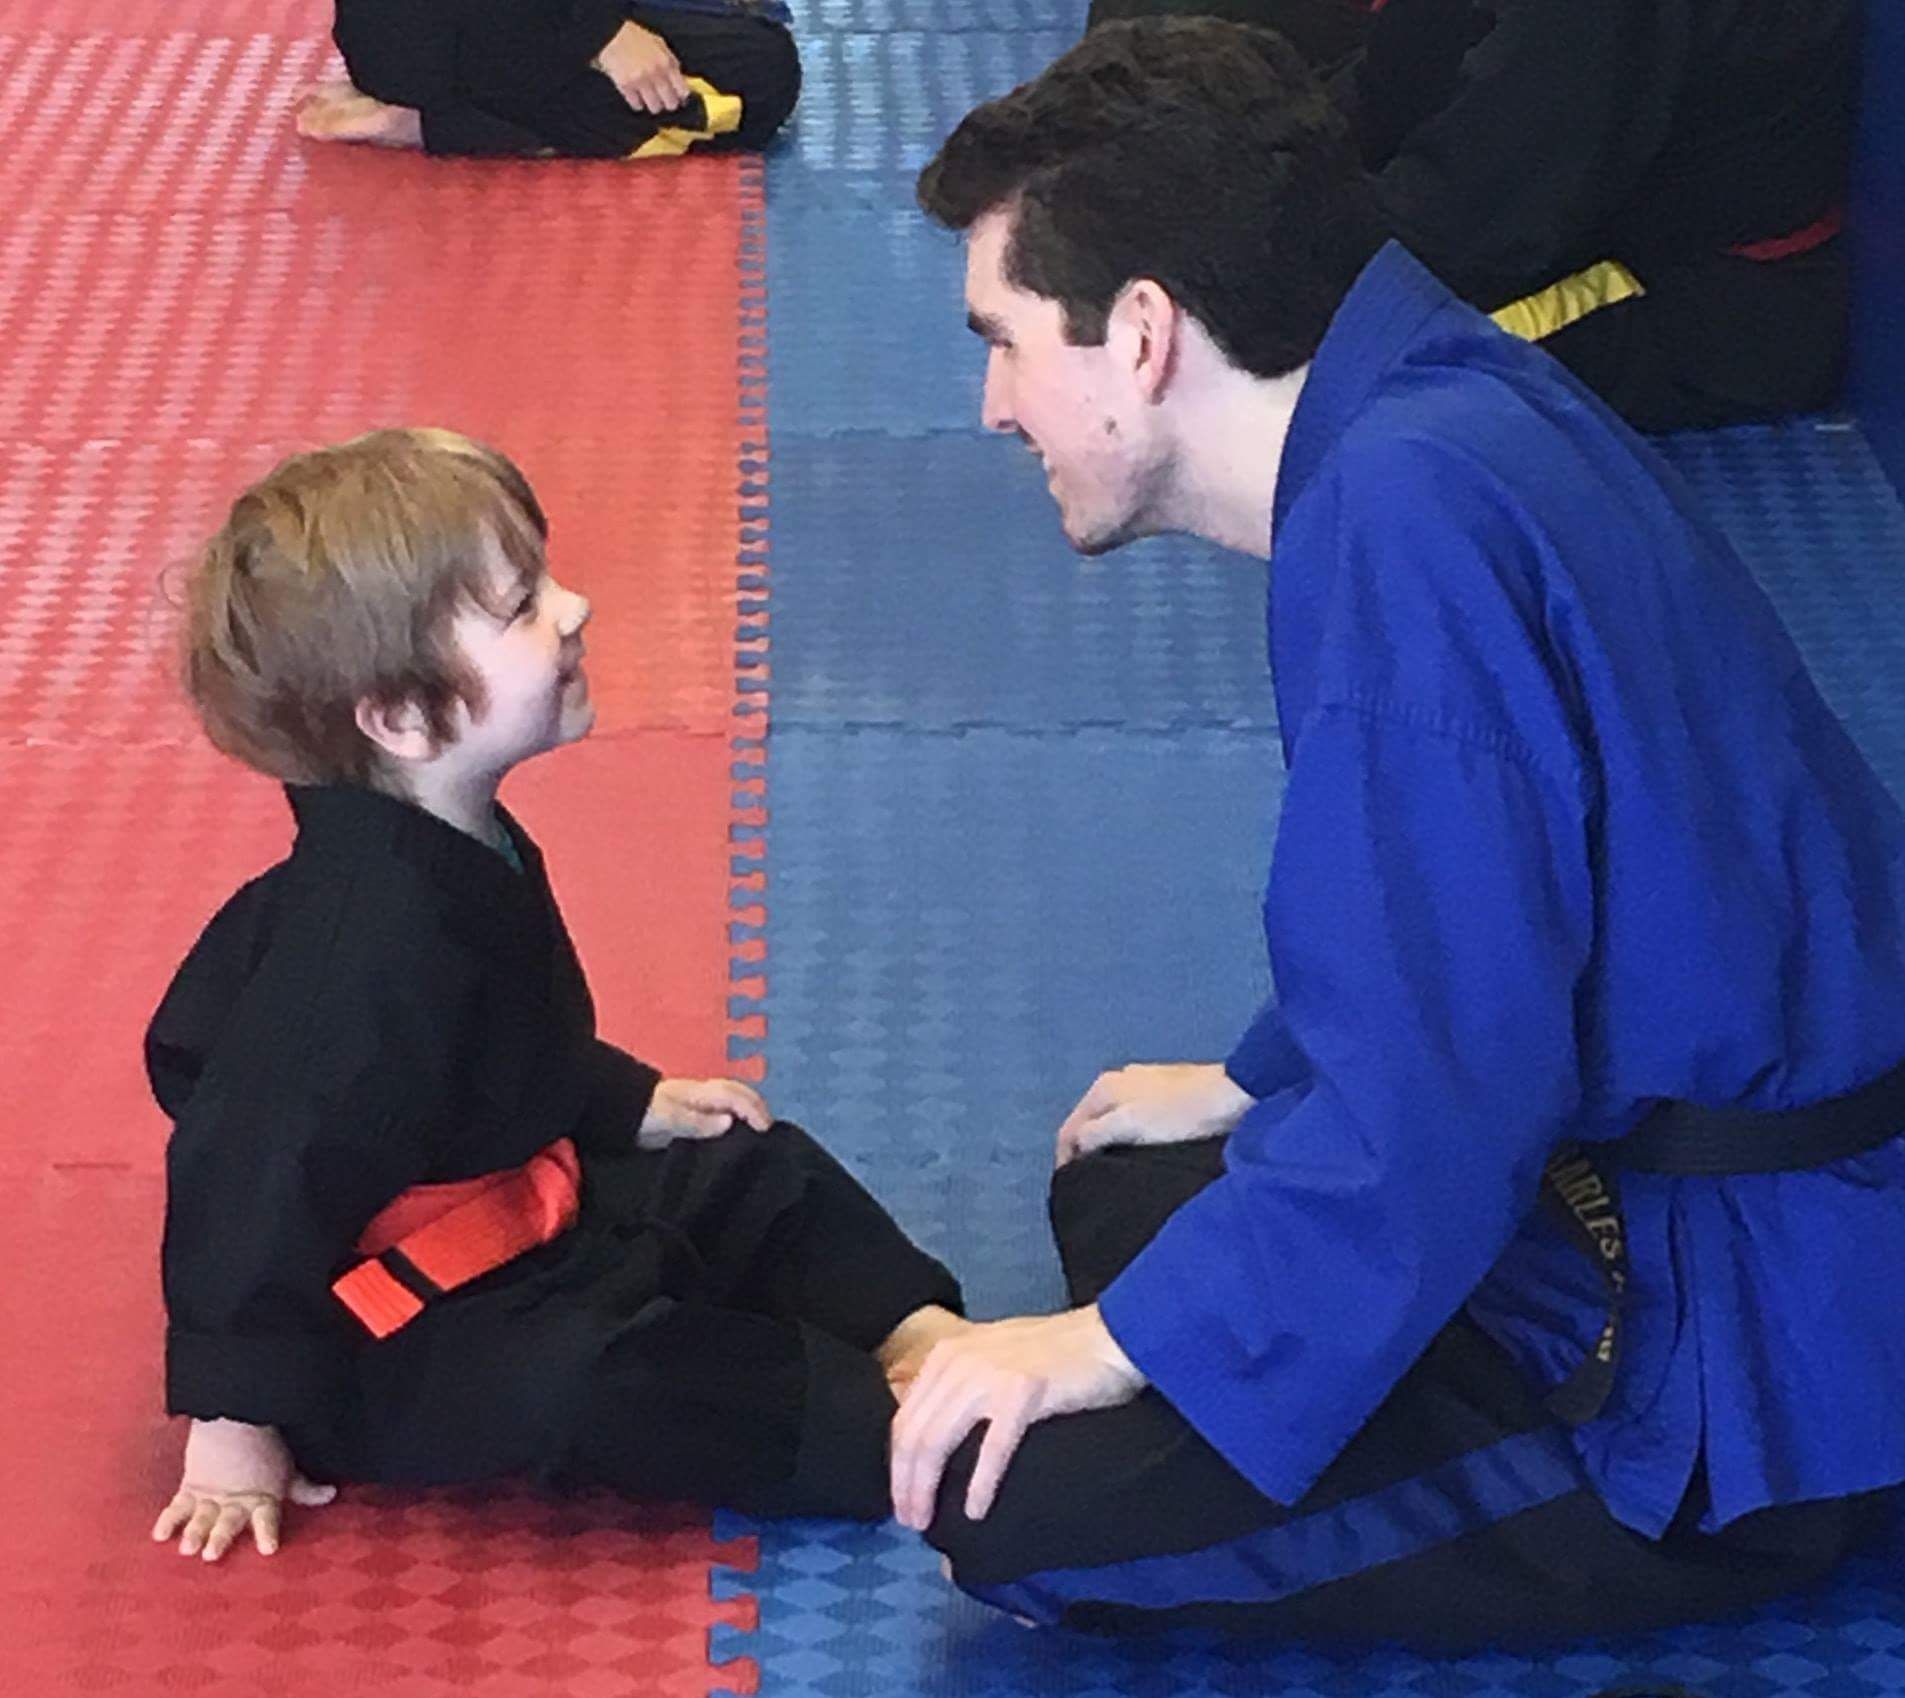 A man in a blue jacket is kneeling down next to a little boy in a black uniform